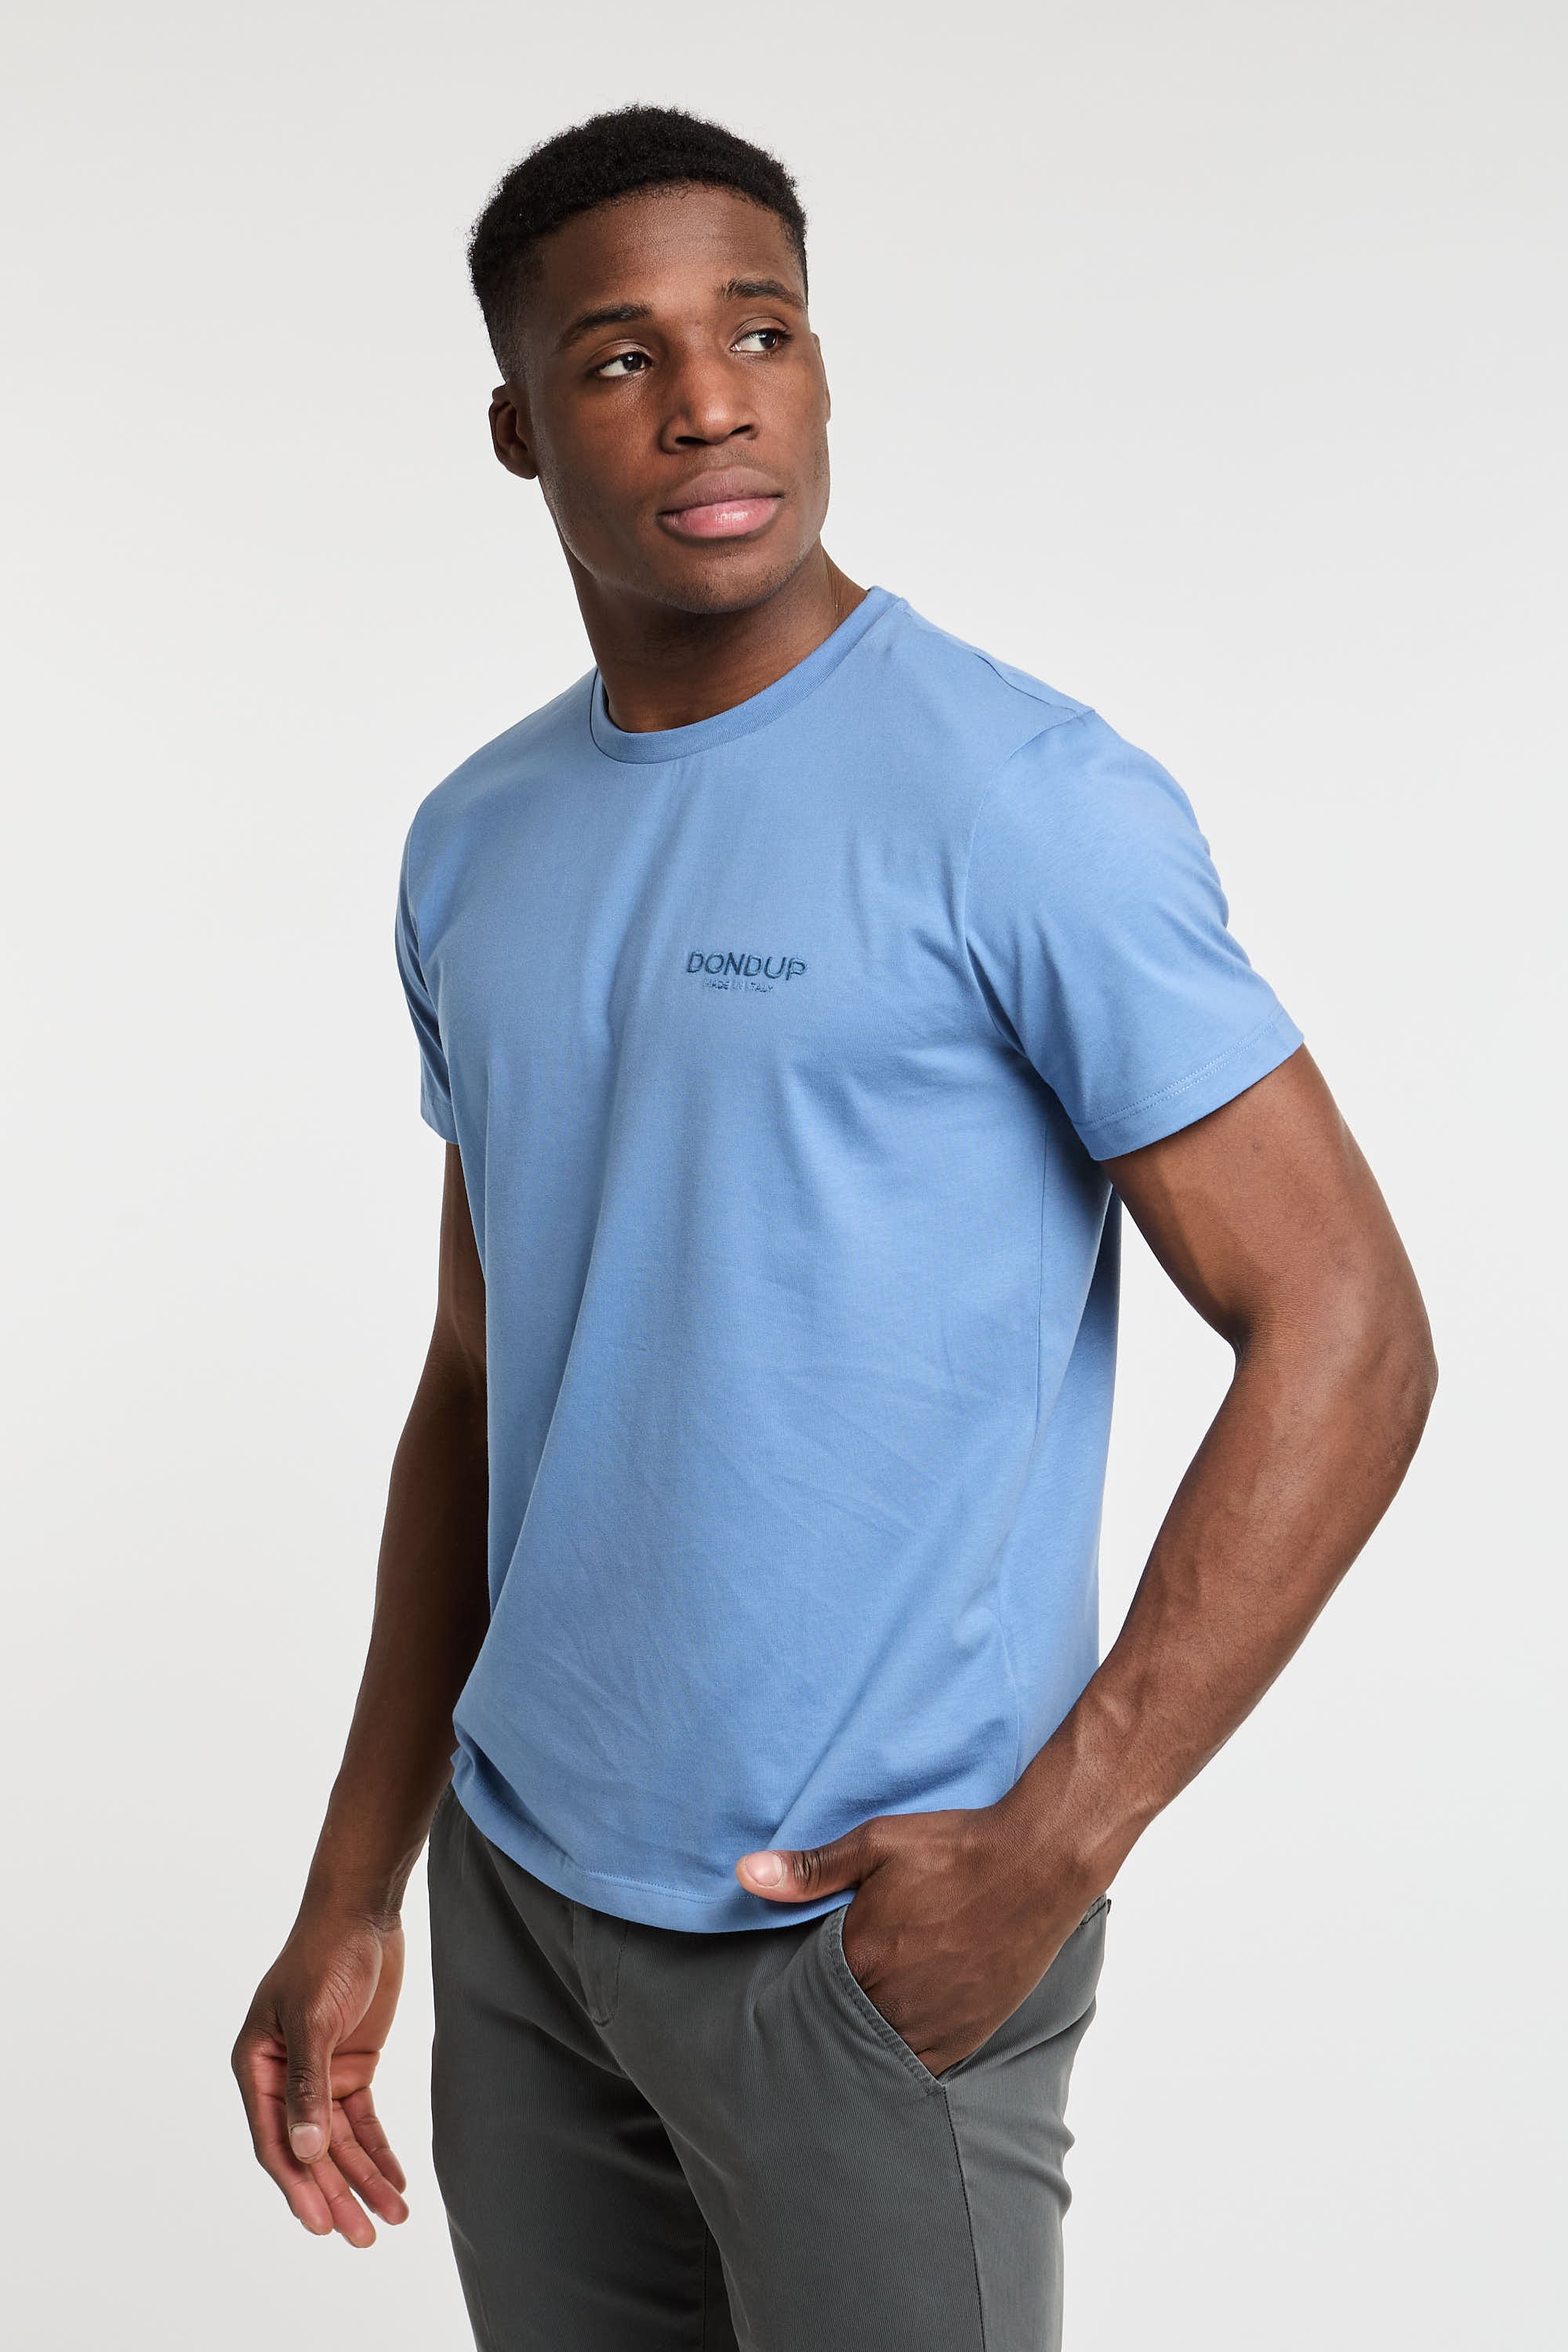 Dondup T-Shirt Cotton Light Blue-5